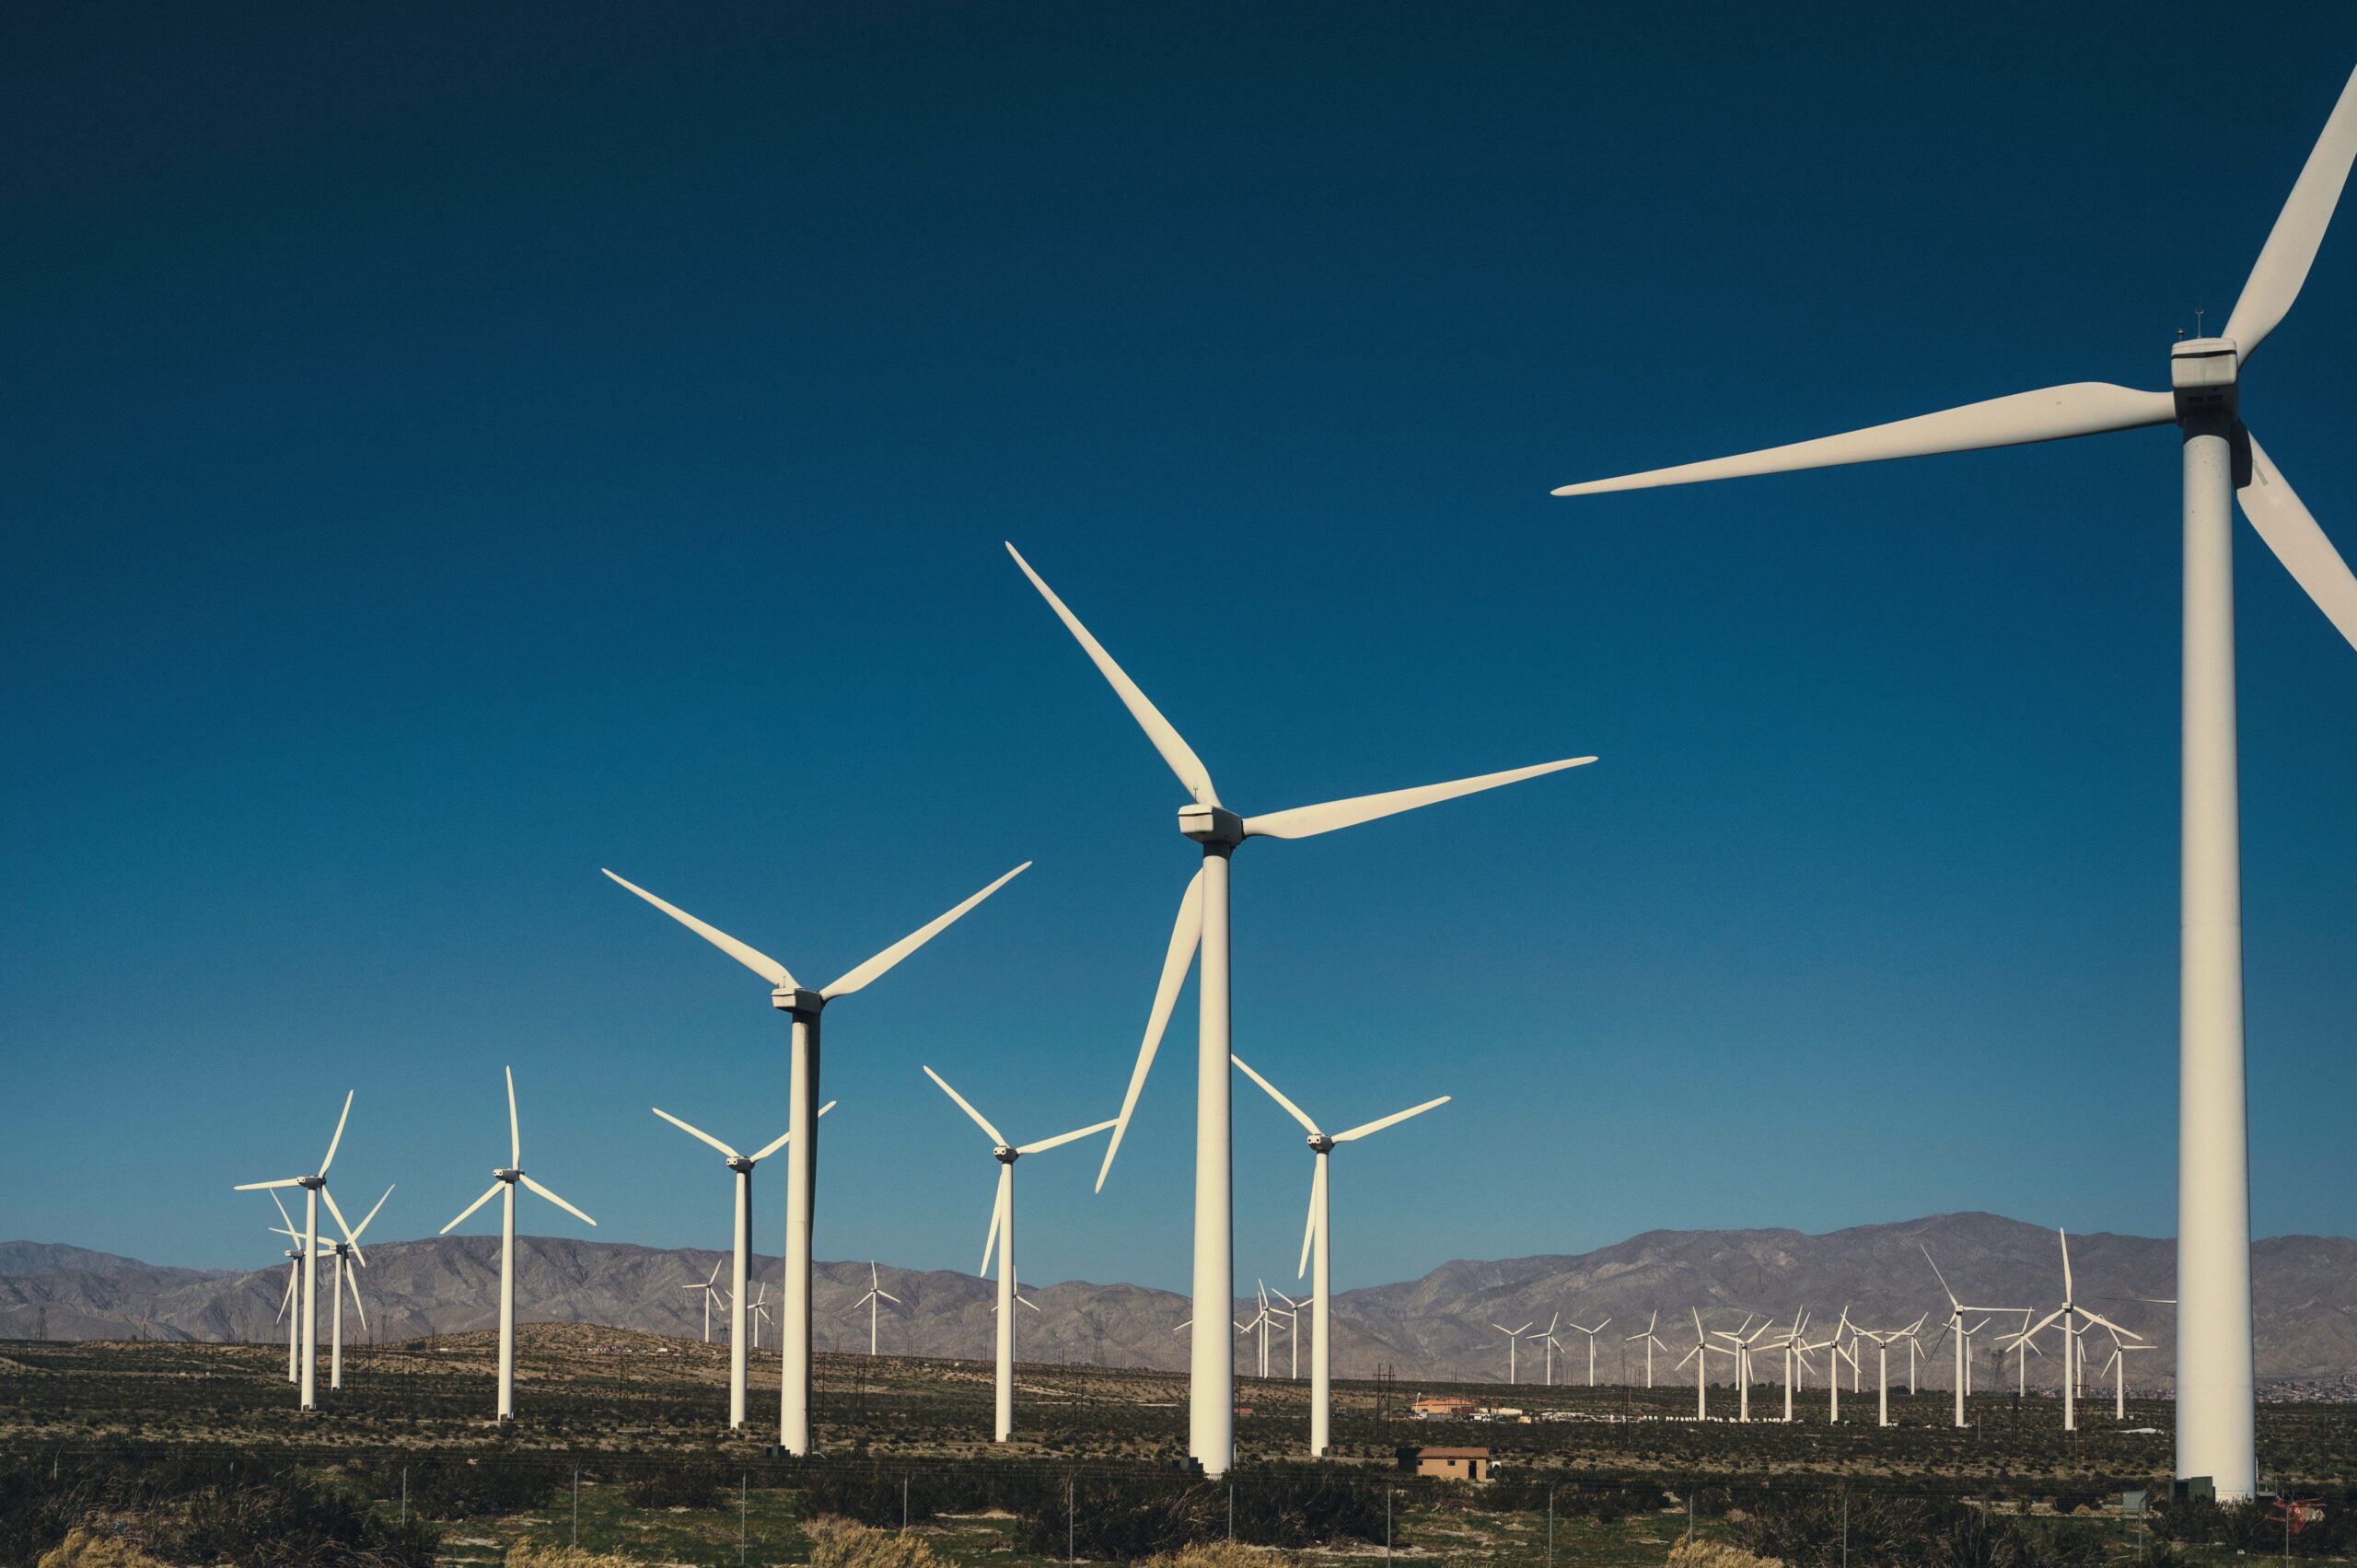 A field of wind turbines